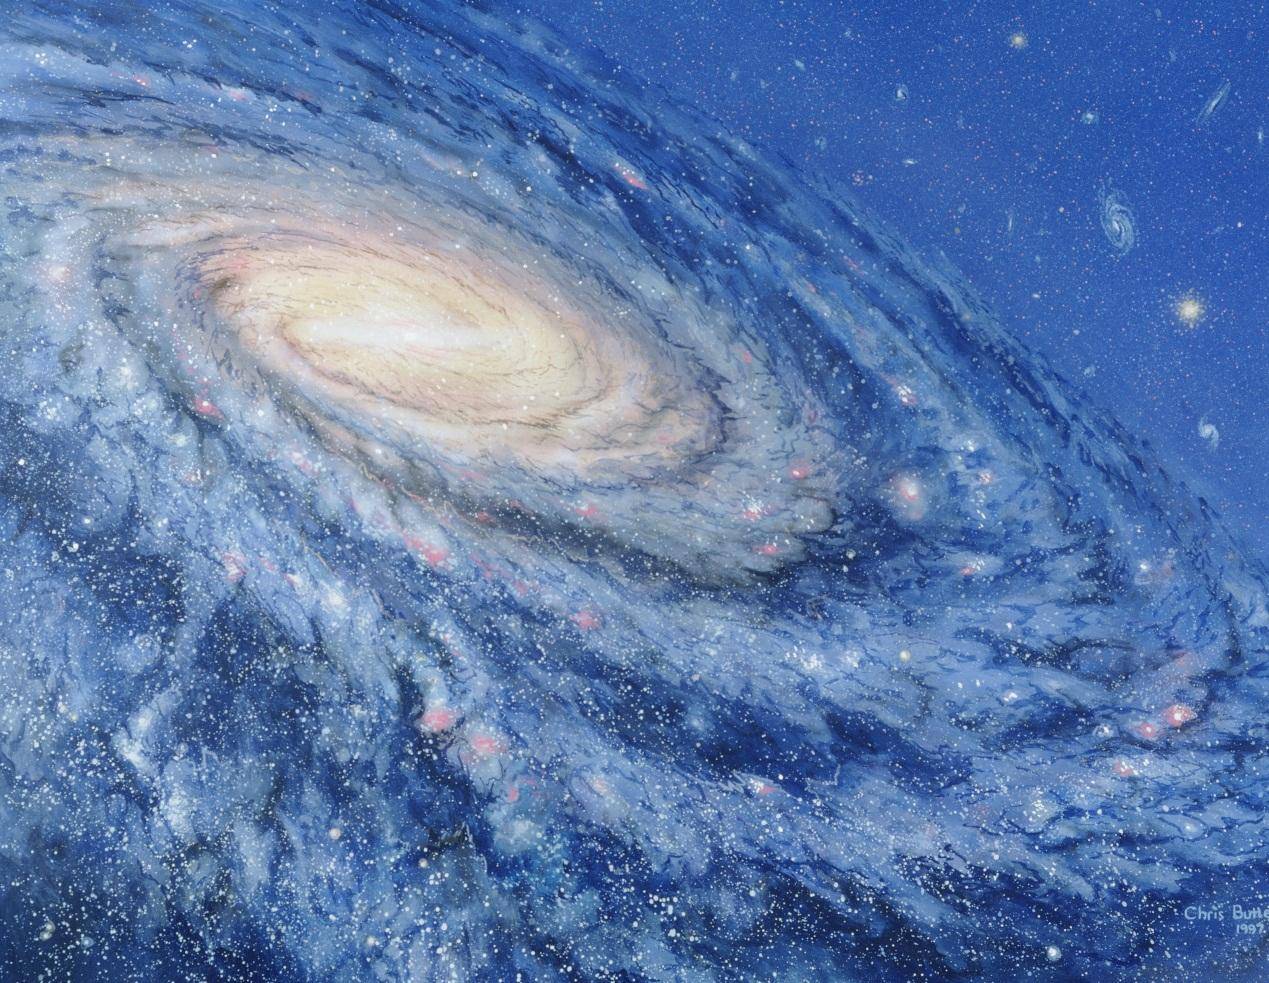 宇宙巨洞是什么?它会对银河系产生怎样的影响?看完细思极恐